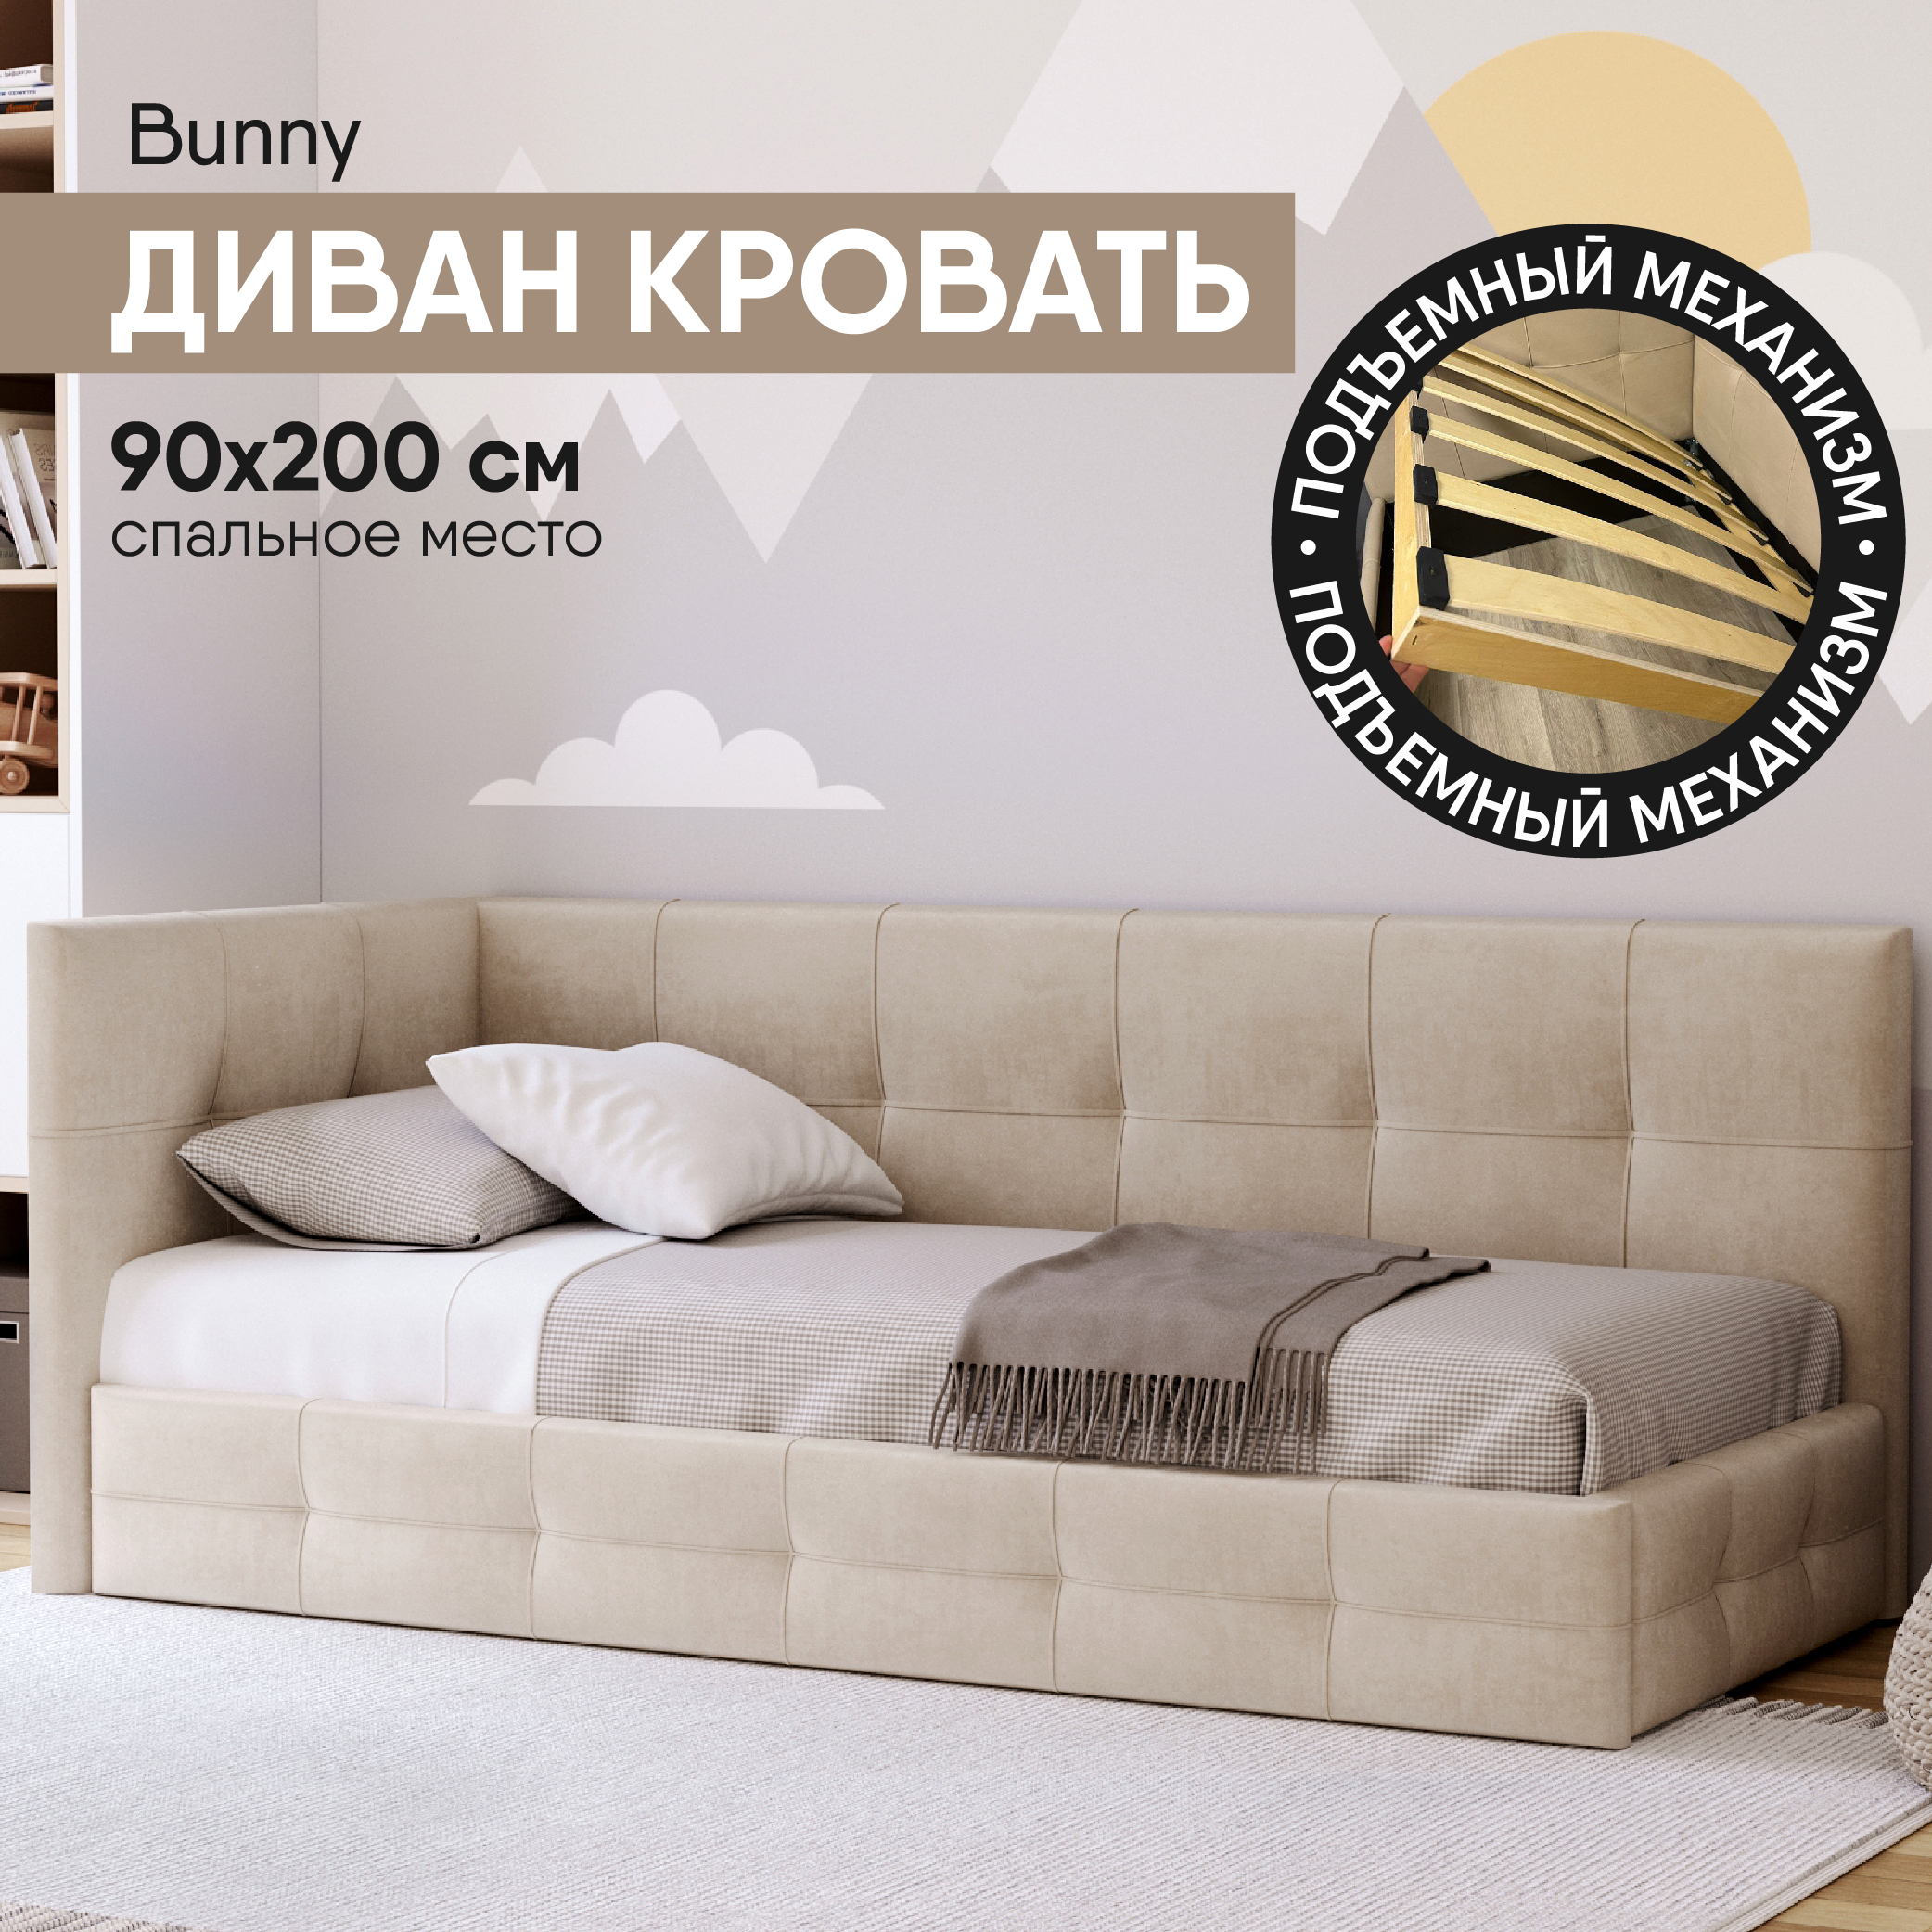 Диван кровать SleepAngel Bunny 90х200 см, с мягким изголовьем, бархат, бежевый мягкая игрушка диван